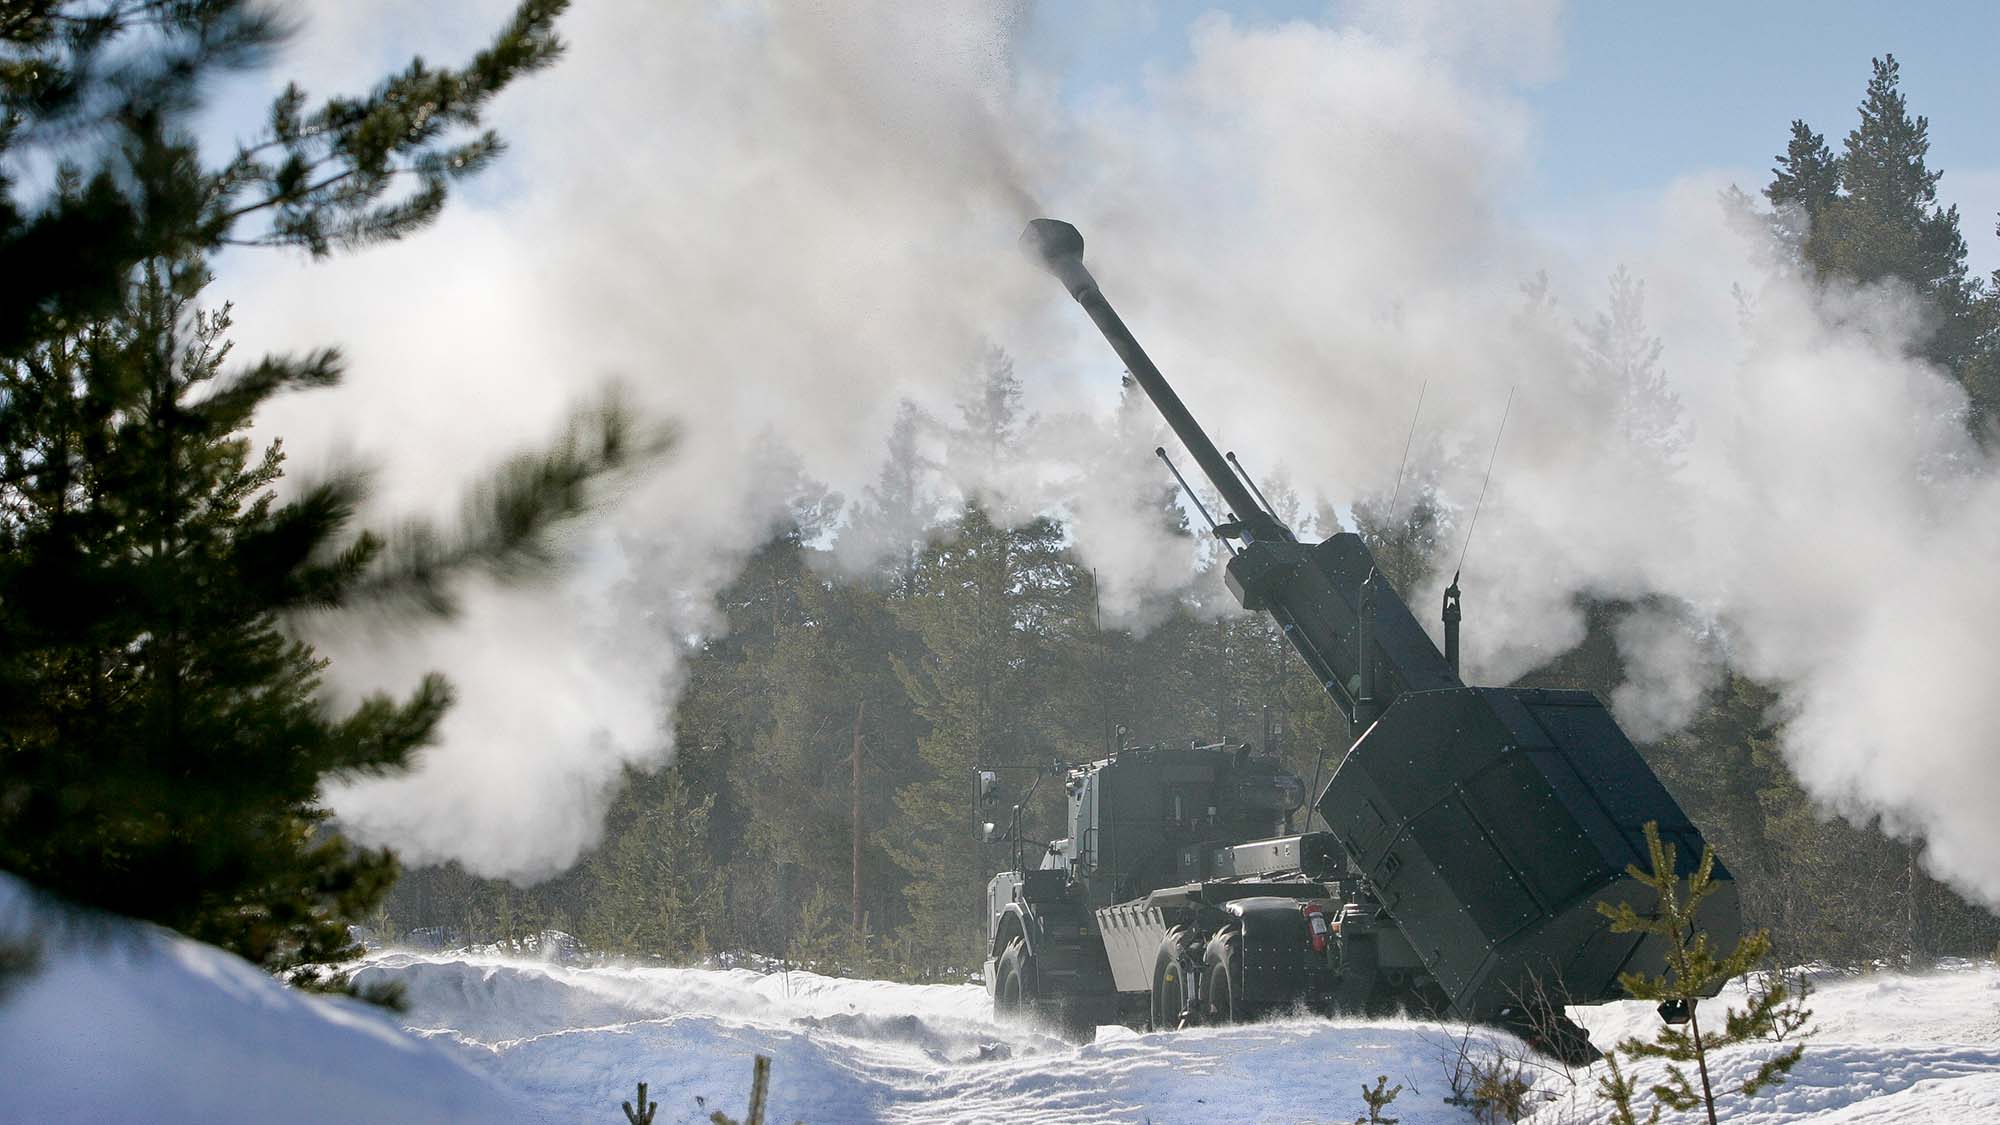 El Reino Unido va a comprar a Suecia 14 unidades de artillería autopropulsada Archer. Sustituirán a los cañones AS-90 que se transferirán a Ucrania